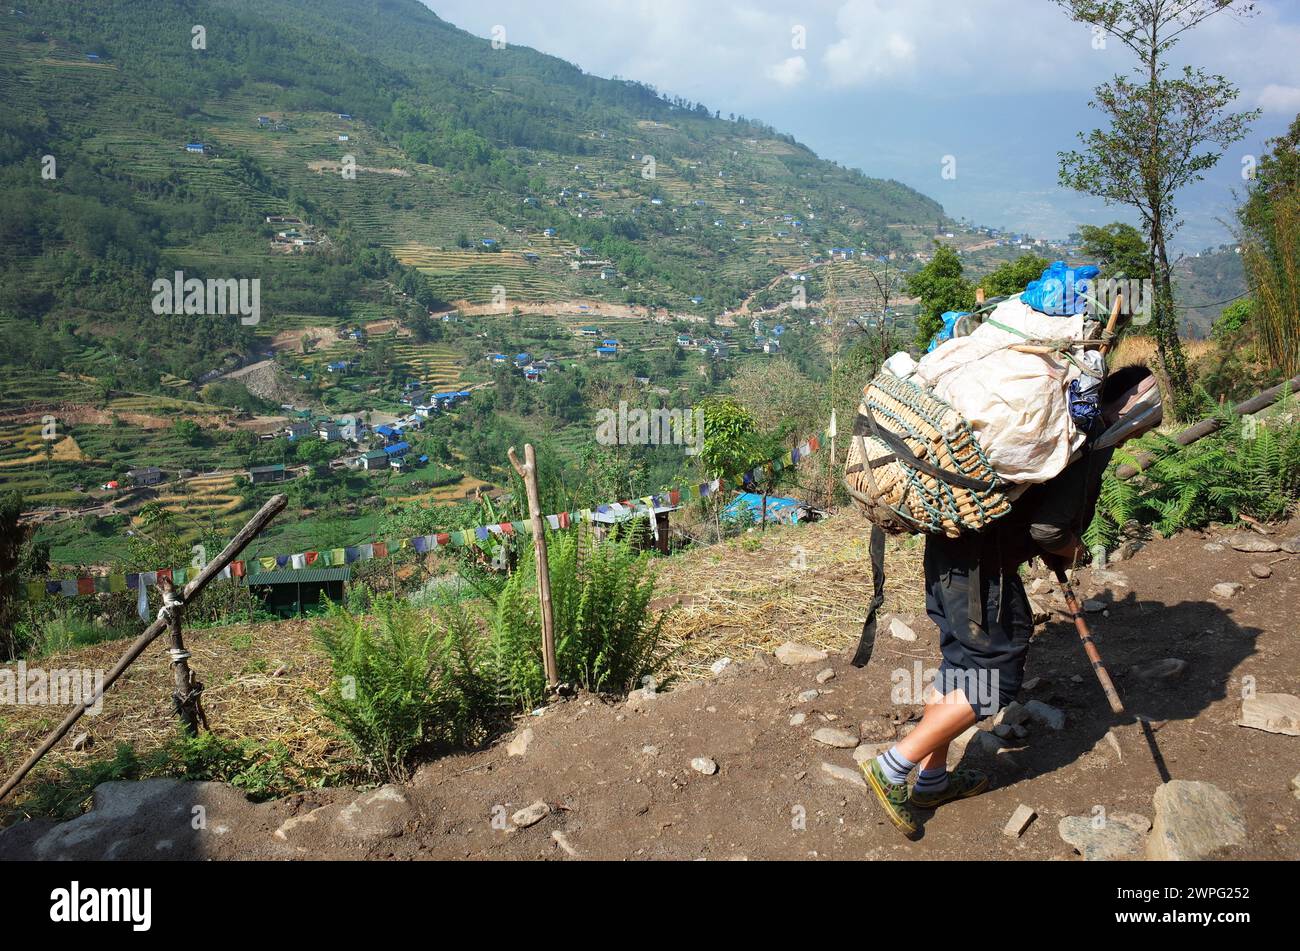 Porteador que lleva carga pesada en la cesta de las montañas verdes del Himalaya con vista sobre el pueblo de Karikhola, Solukhumbu, región del Everest, Nepal Foto de stock